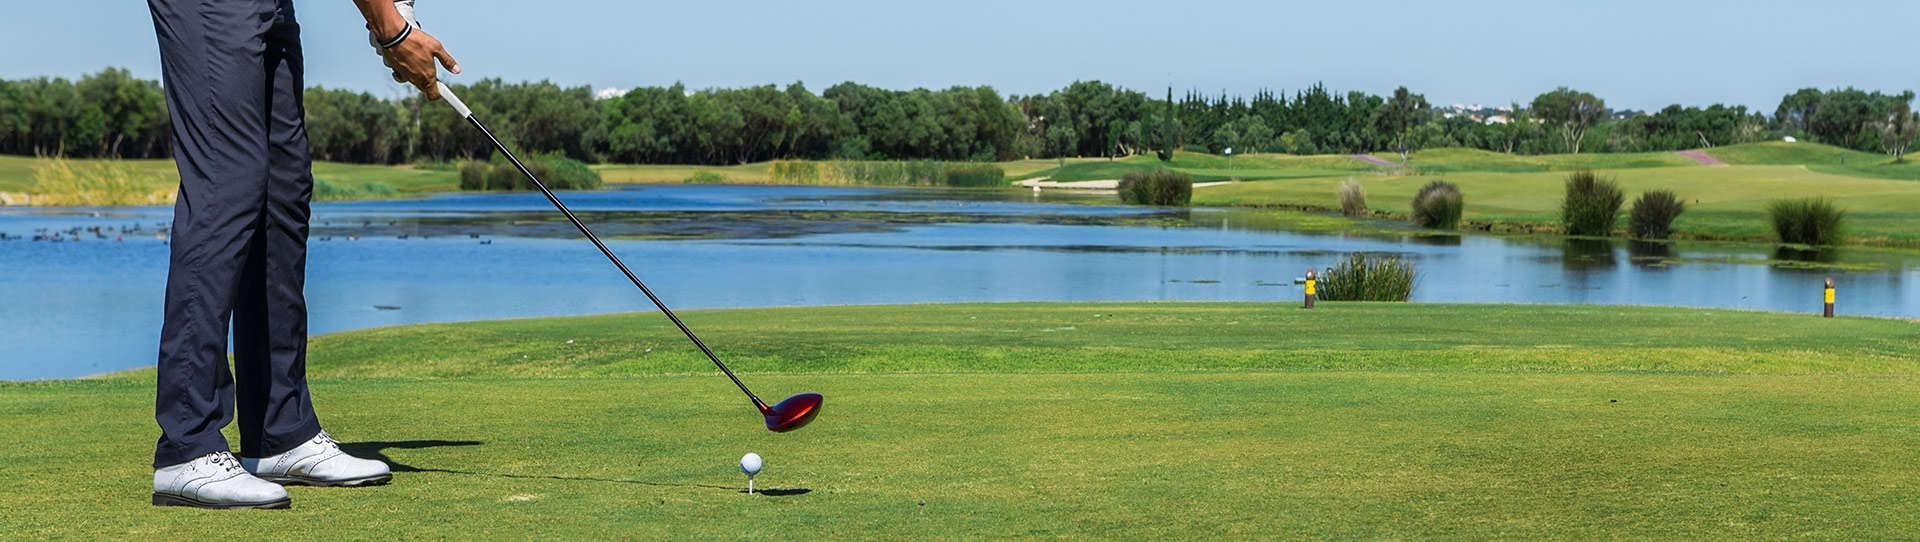 Golfing-in-the-Algarve